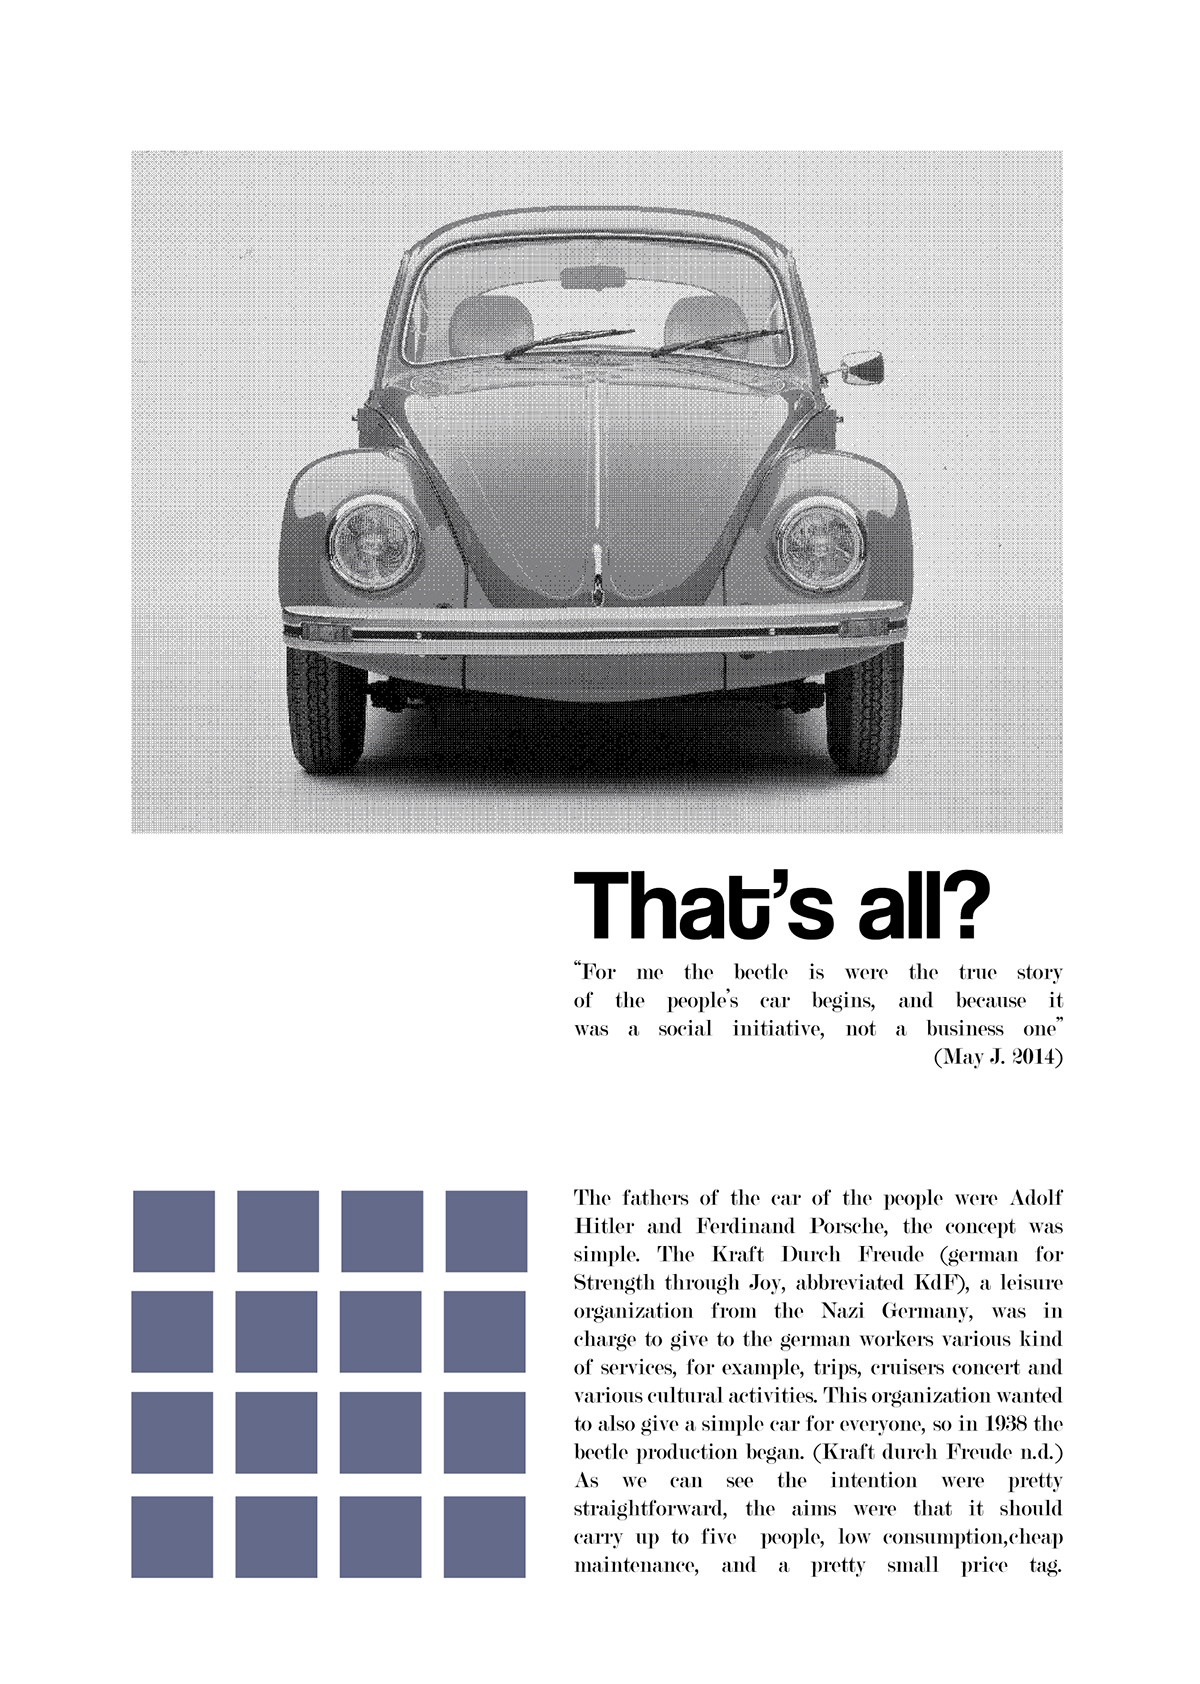 VW beetle classic car publication research